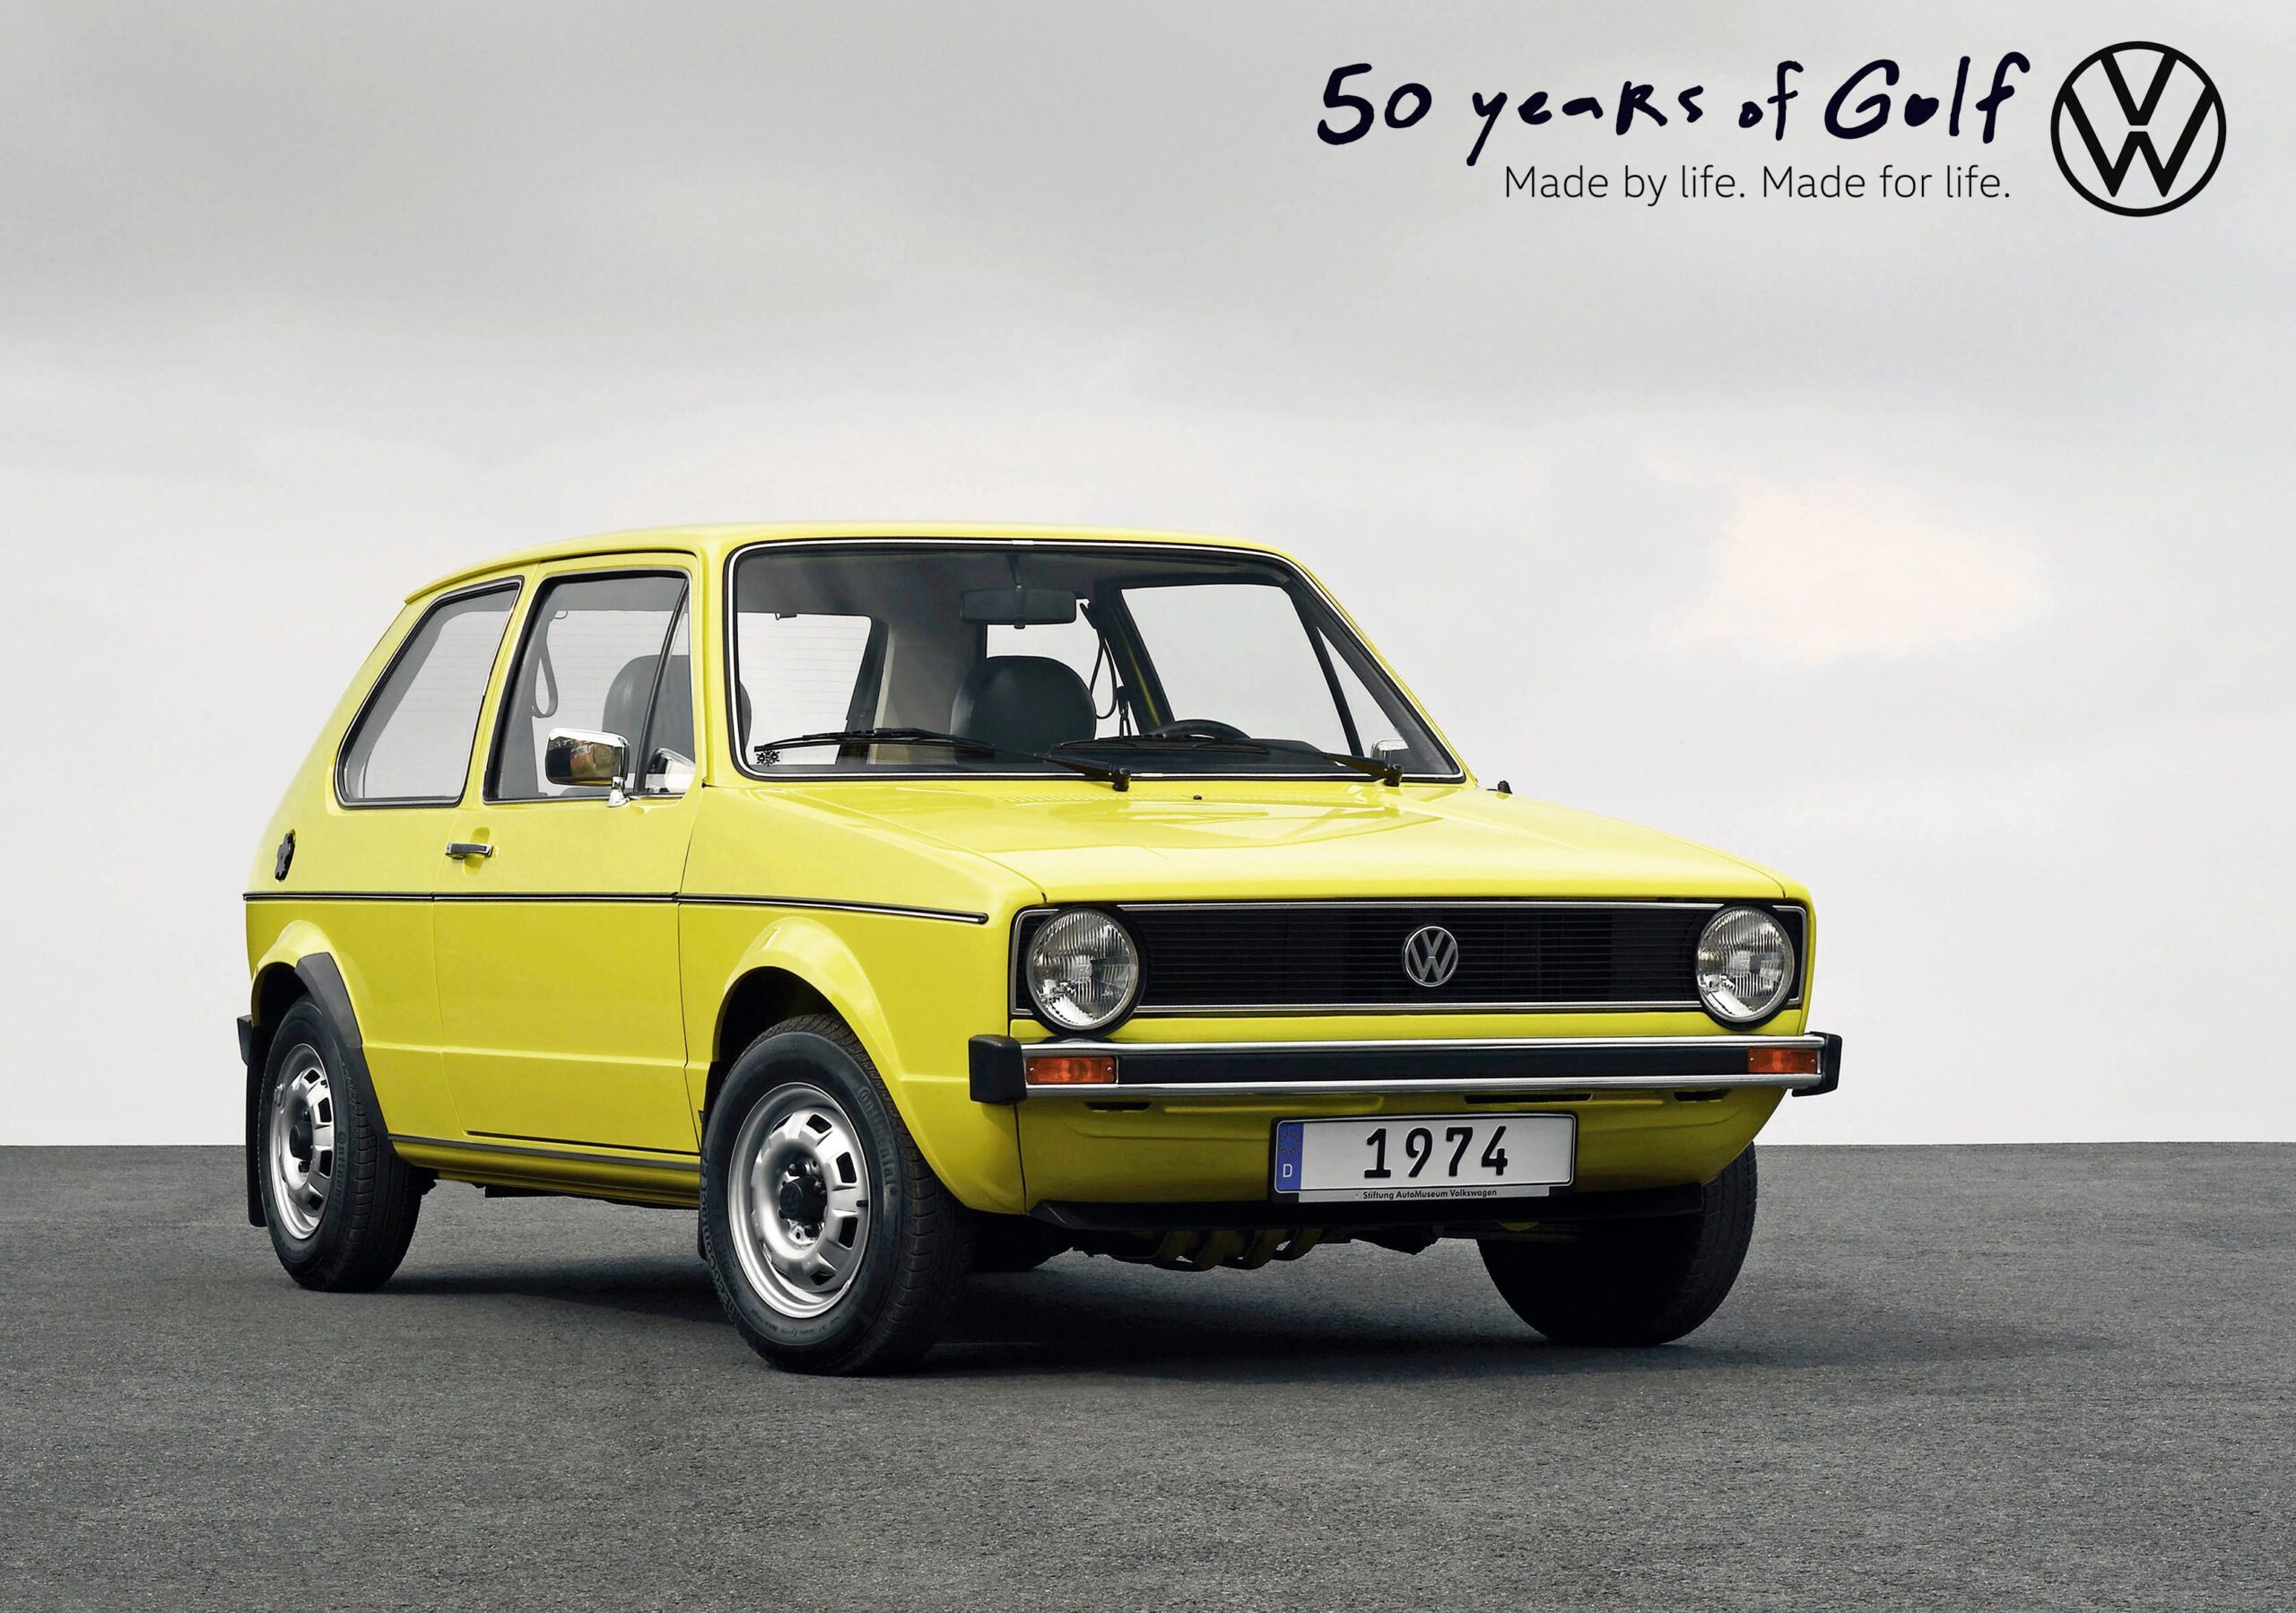 Volkswagen Golf 50 años